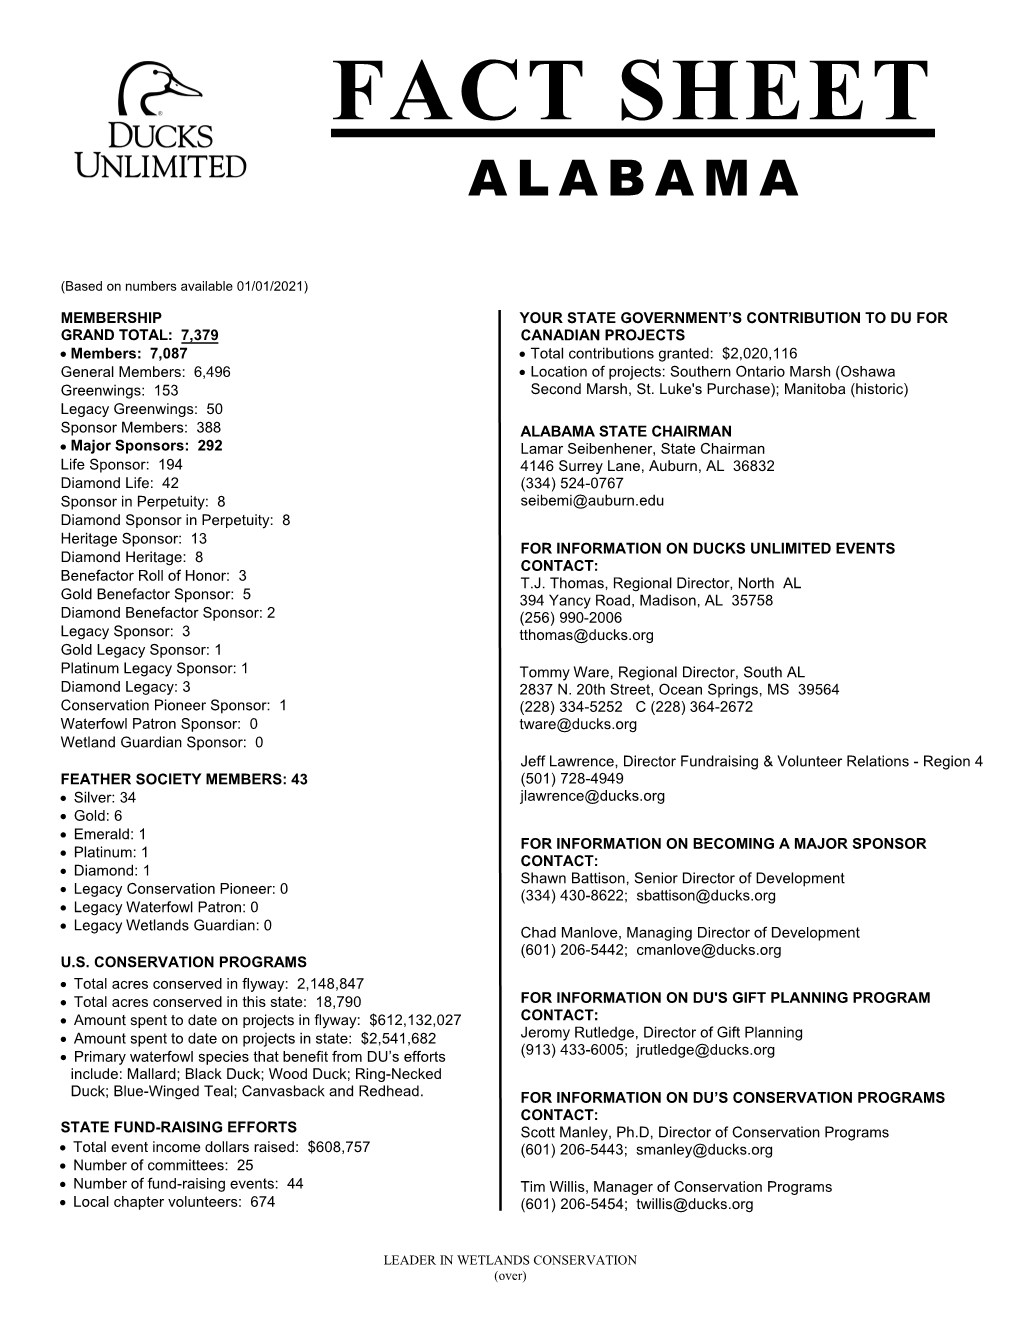 Fact Sheet Alabama